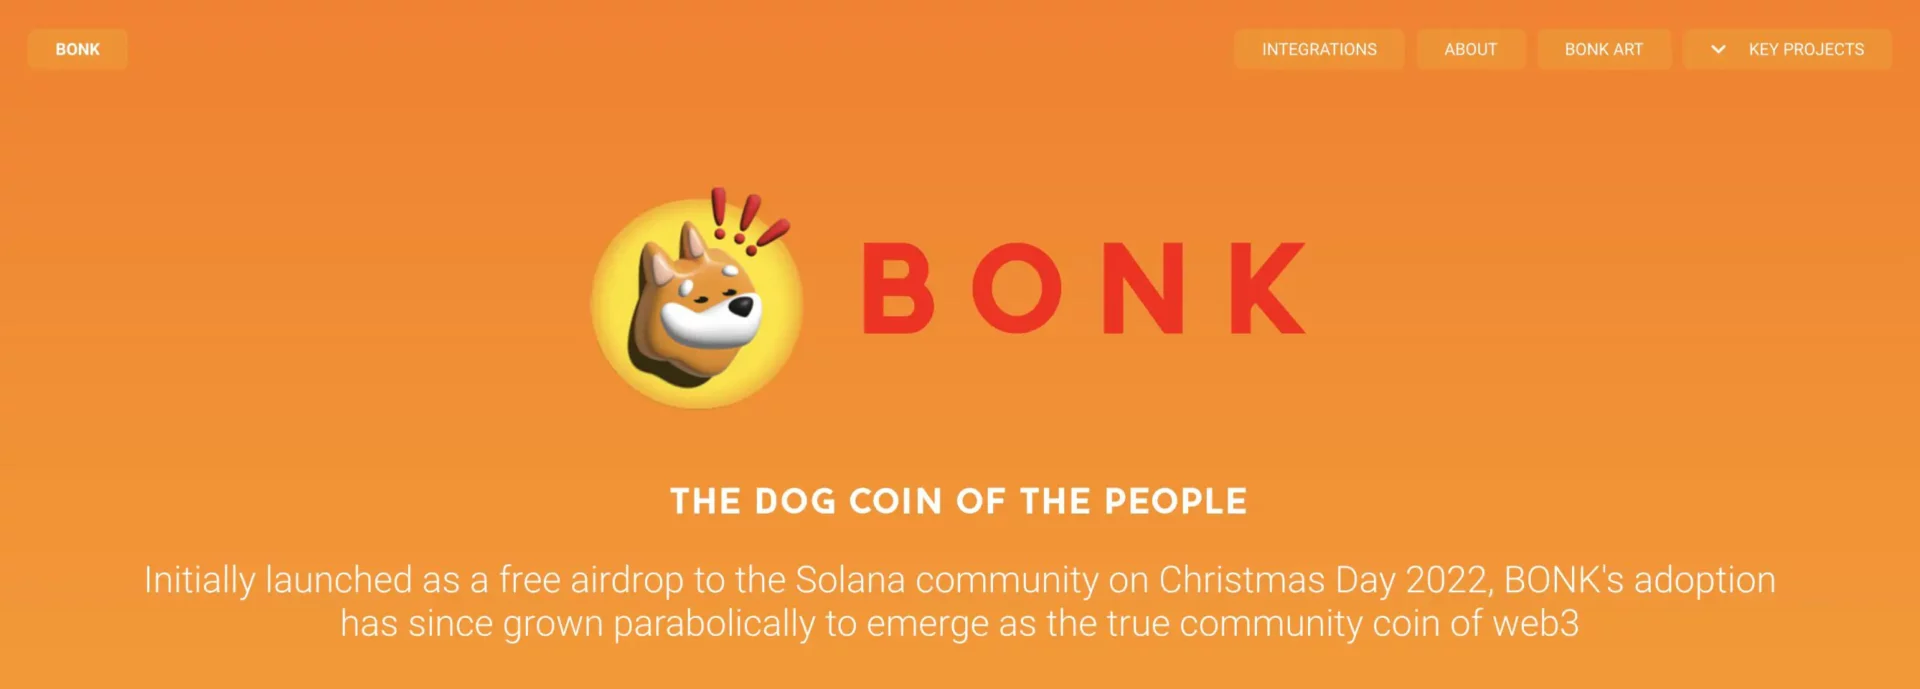 Bonk (BONK) là gì?